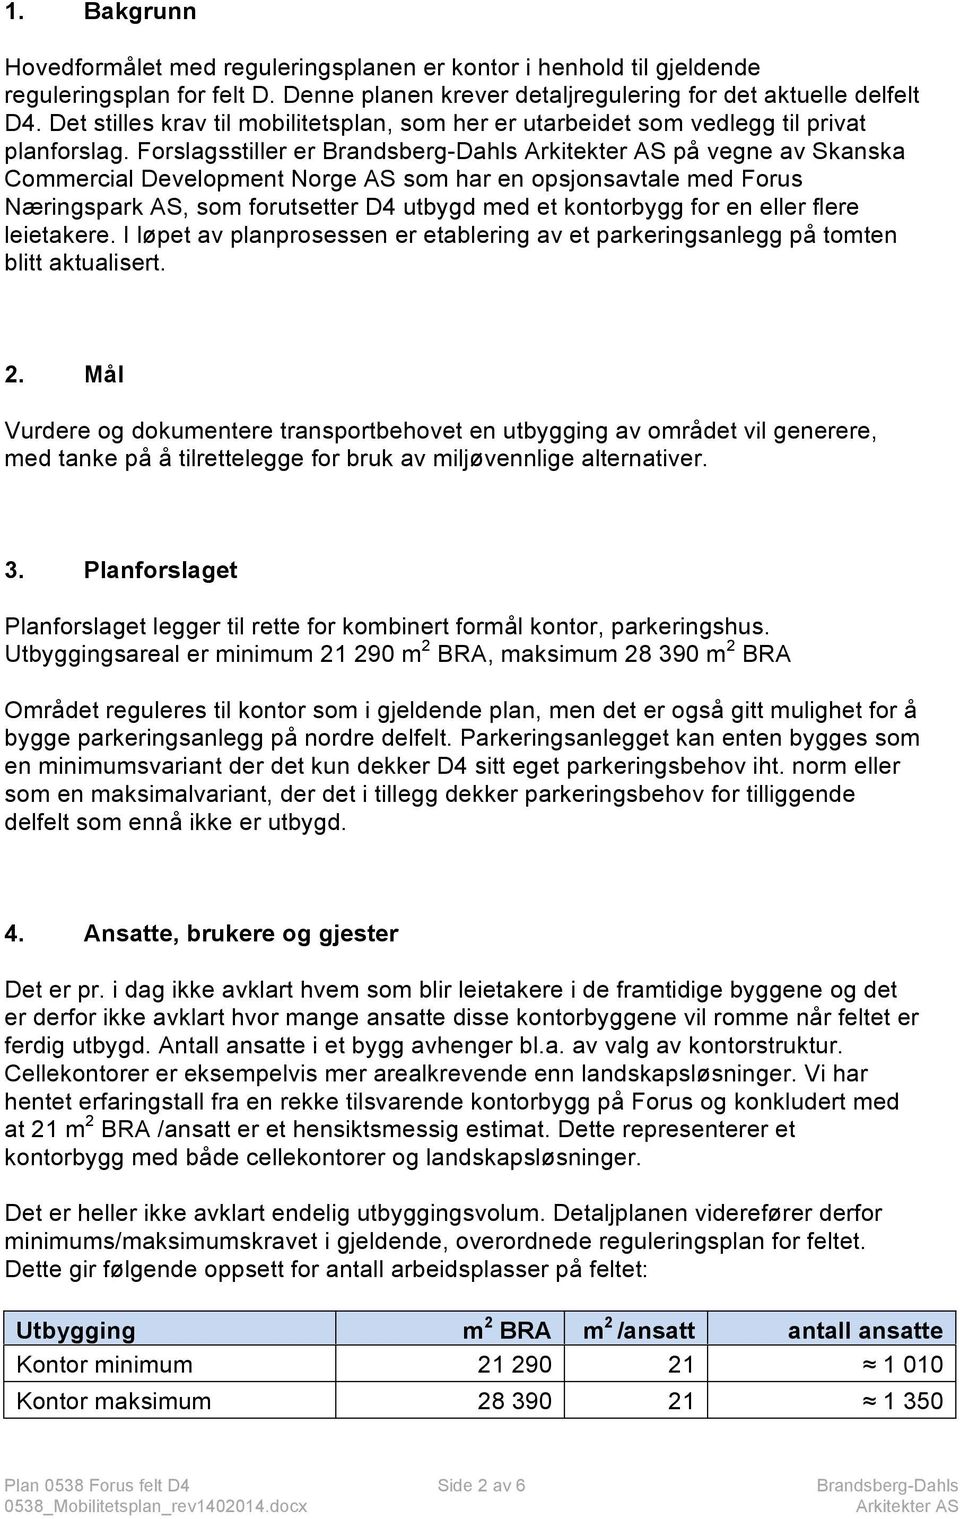 Forslagsstiller er Brandsberg-Dahls på vegne av Skanska Commercial Development Norge AS som har en opsjonsavtale med Forus Næringspark AS, som forutsetter D4 utbygd med et kontorbygg for en eller